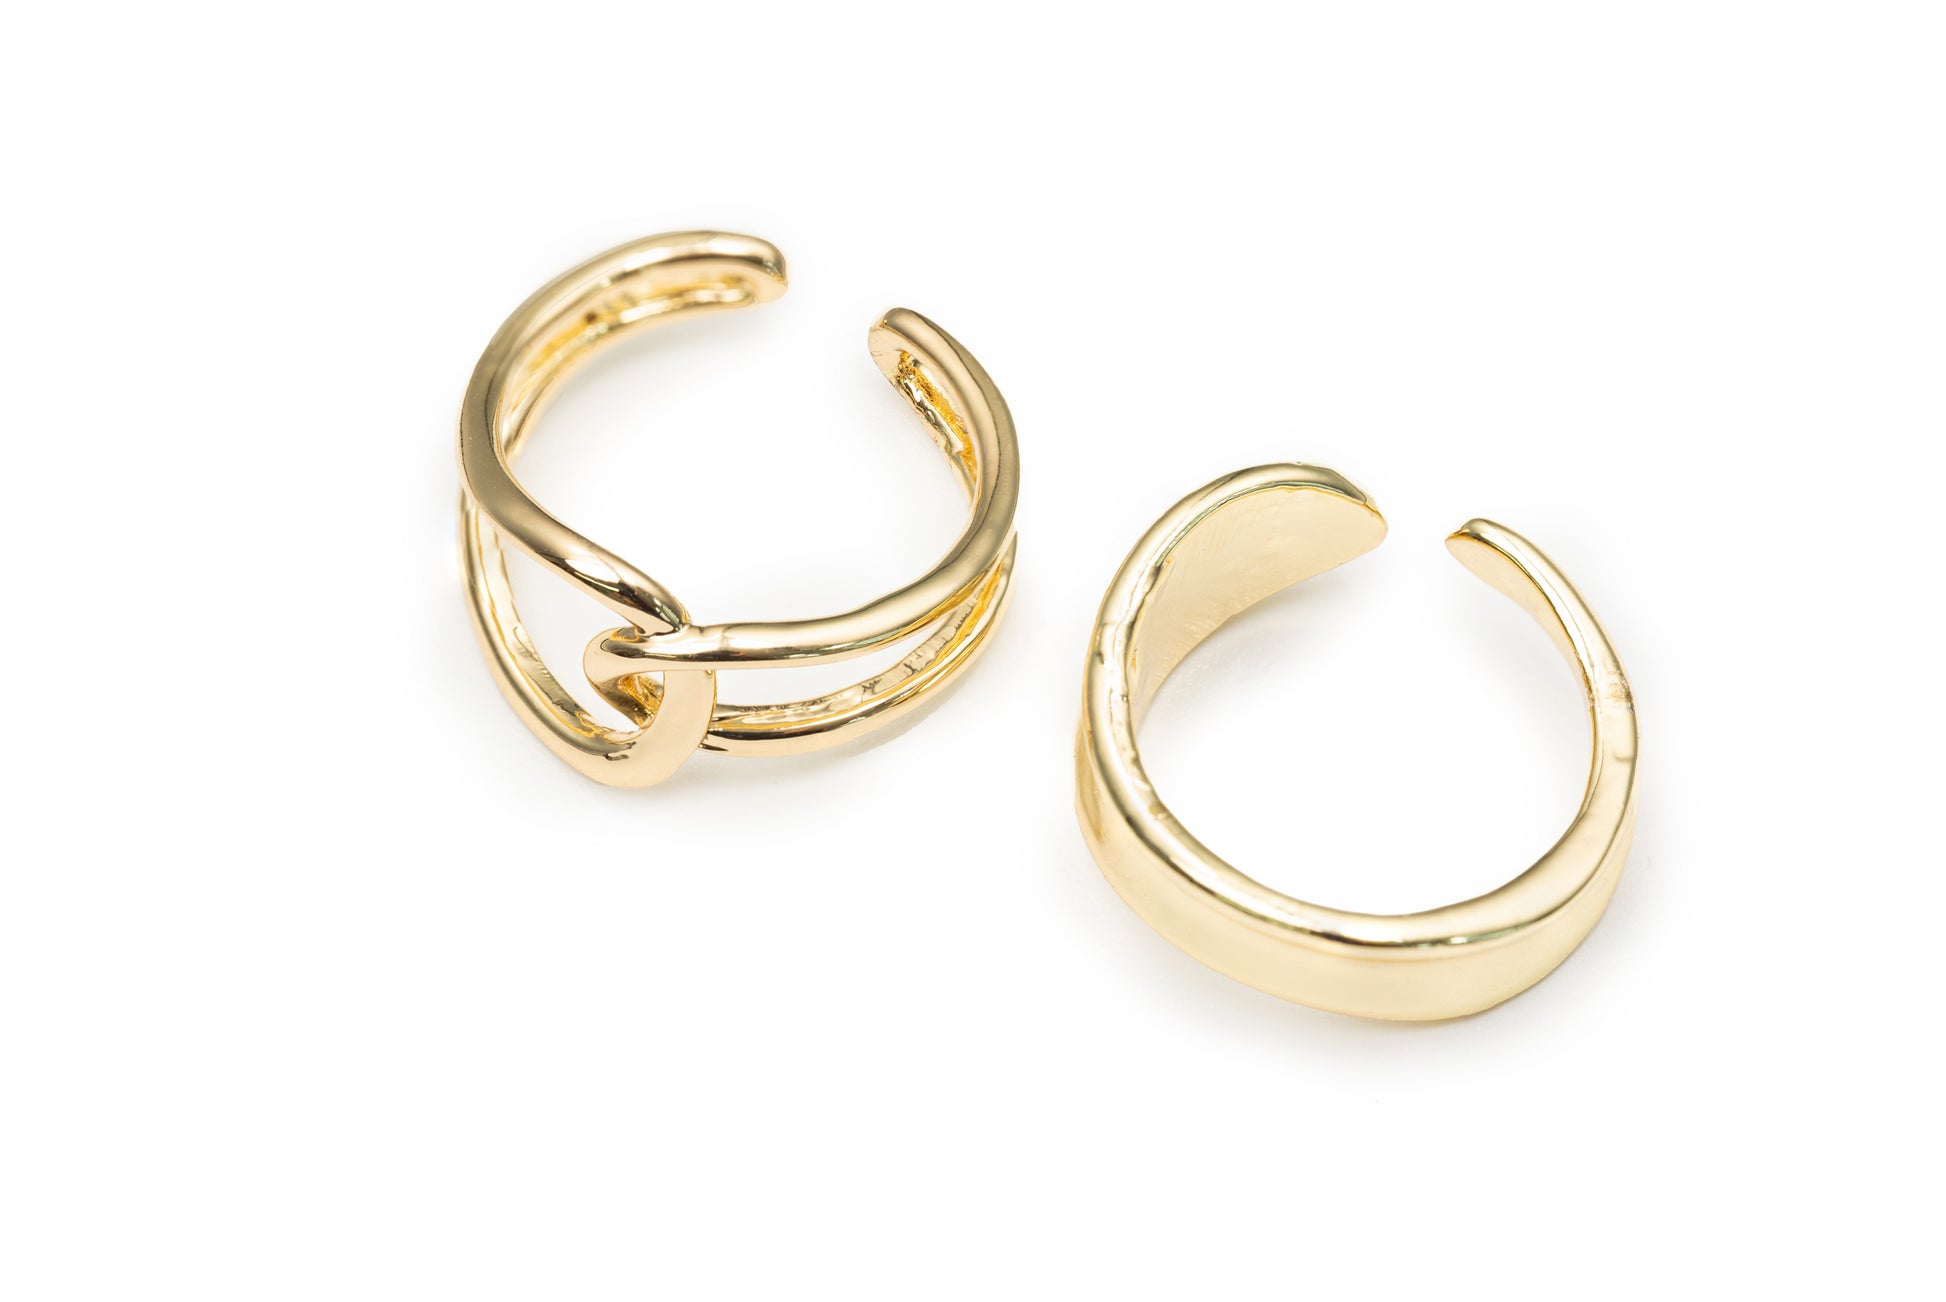 Irregular Rings Pack - Golden/Silver Rings for Women